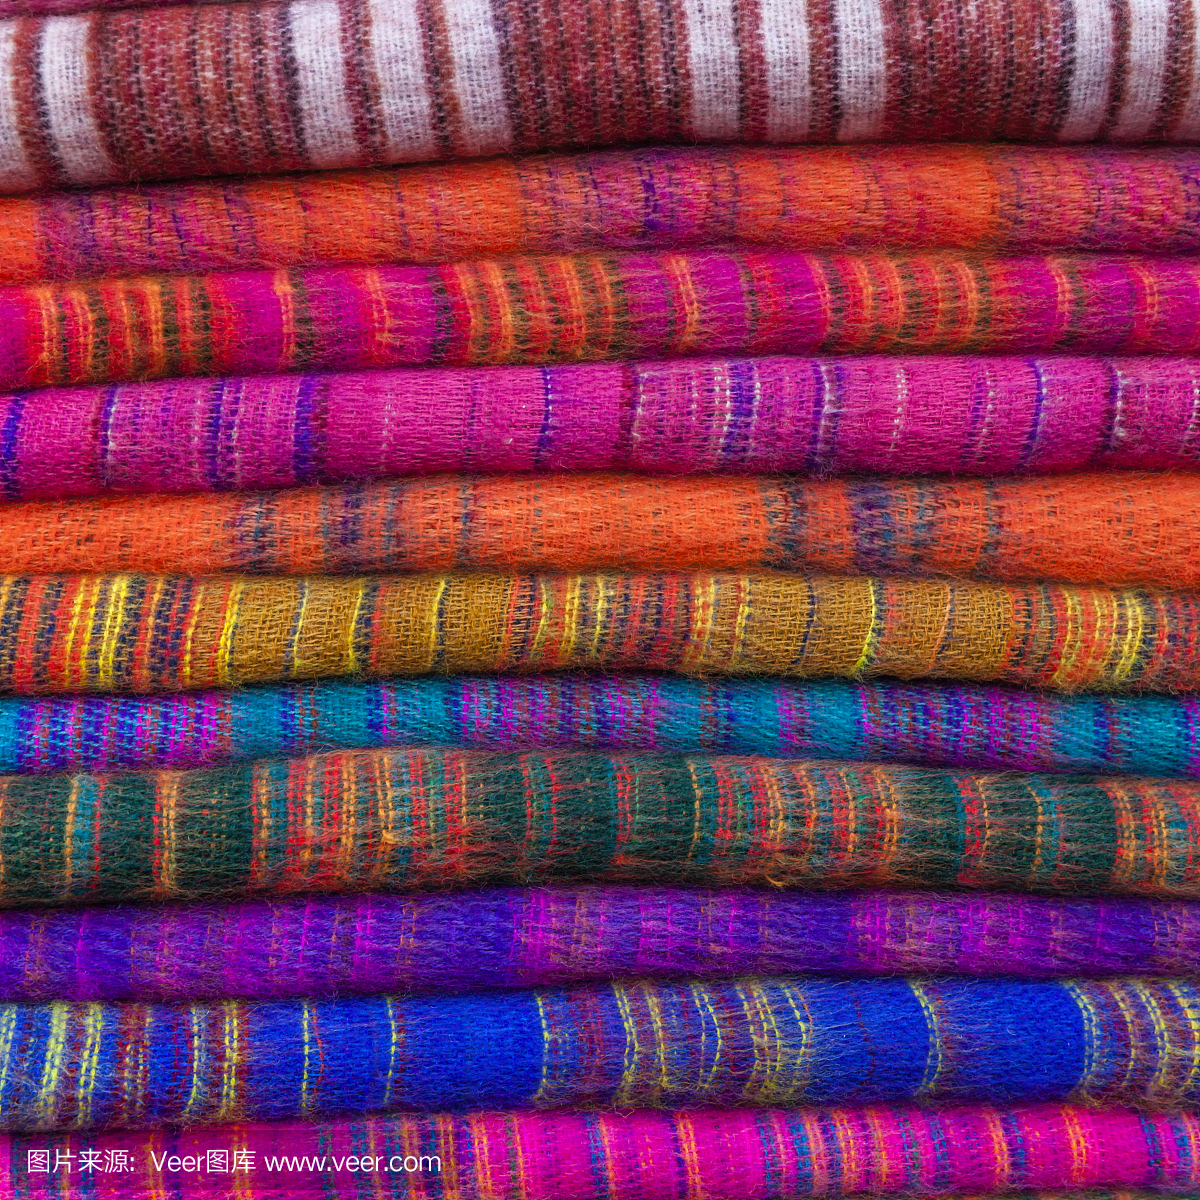 尼泊尔加德满都,彩色的羊绒披肩